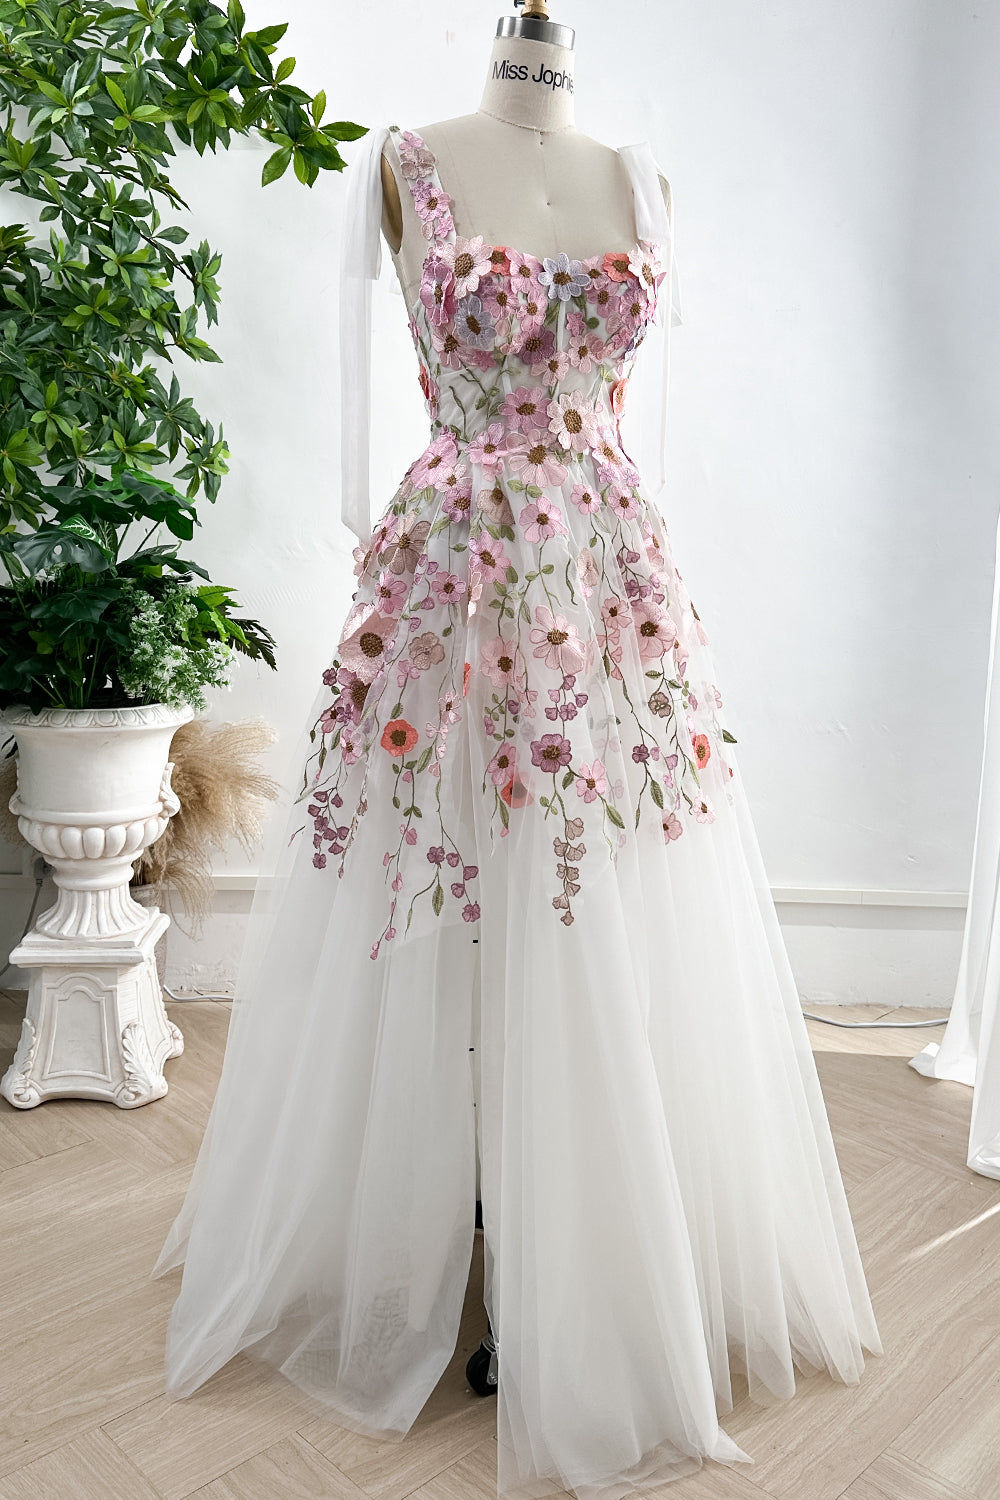 MissJophiel Applique Floral Corset Ivory Pink Dress with Removable Tie Straps